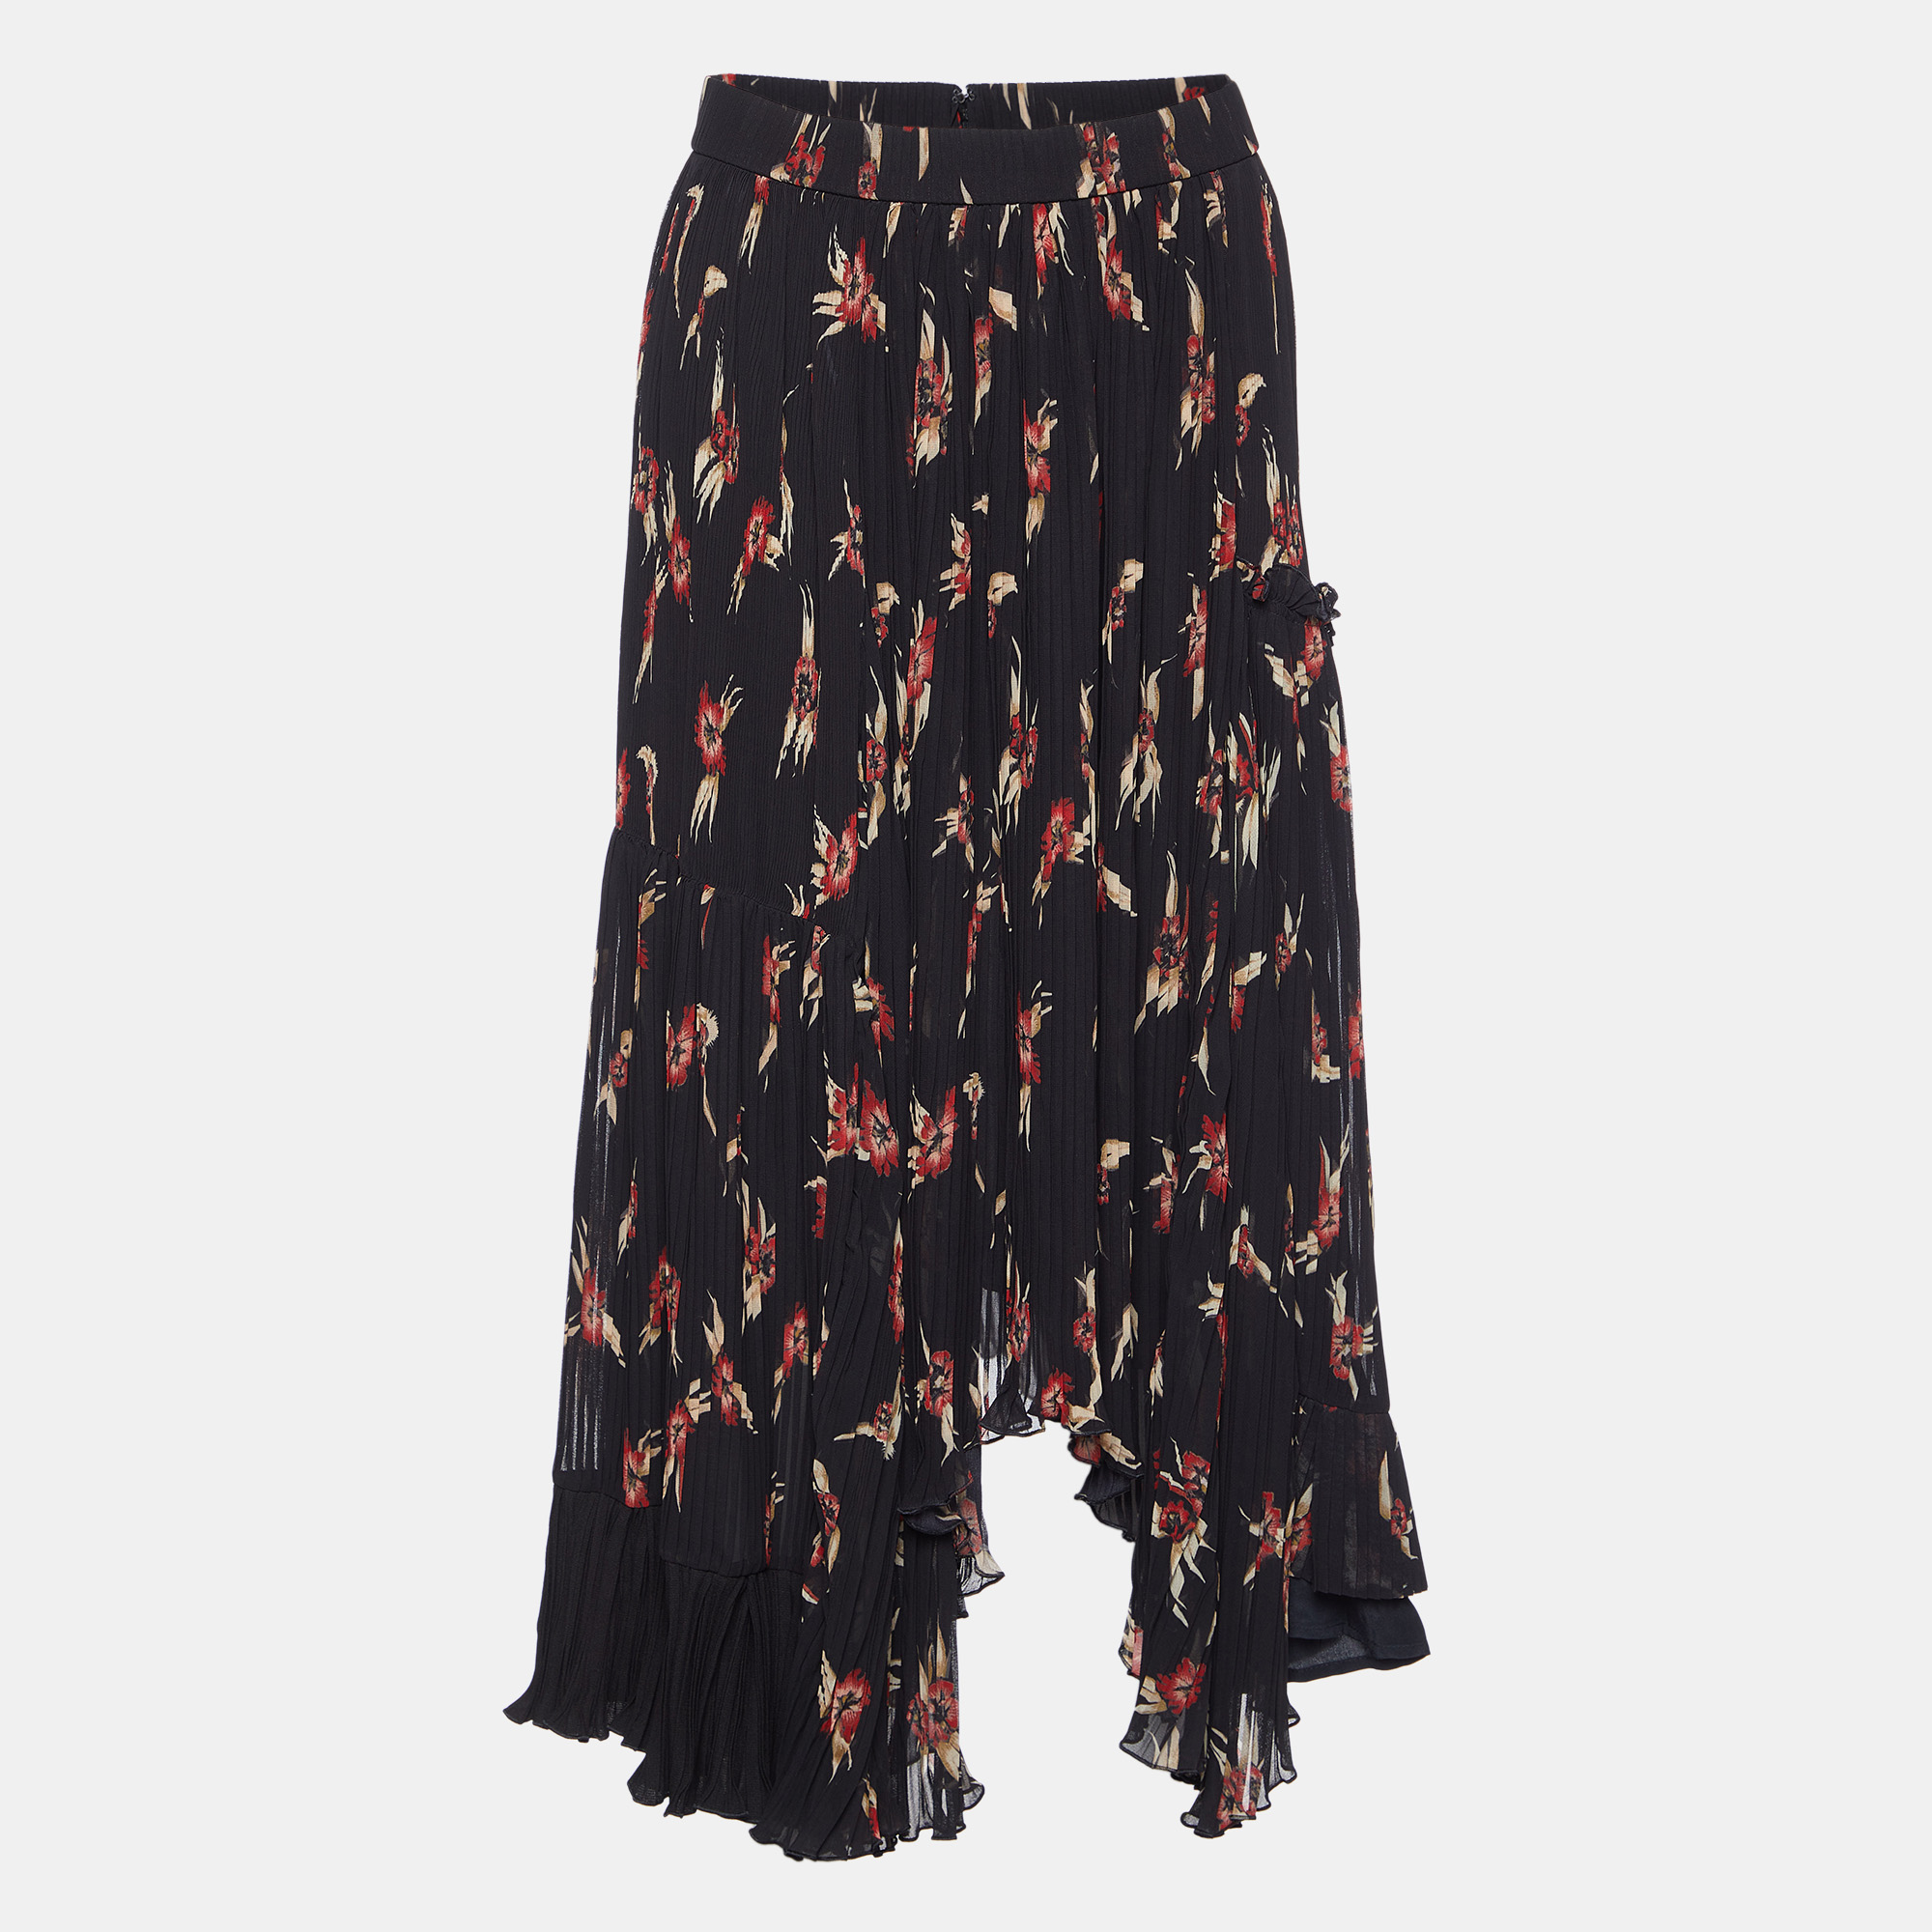 Isabel marant black floral print crepe pleated midi skirt s